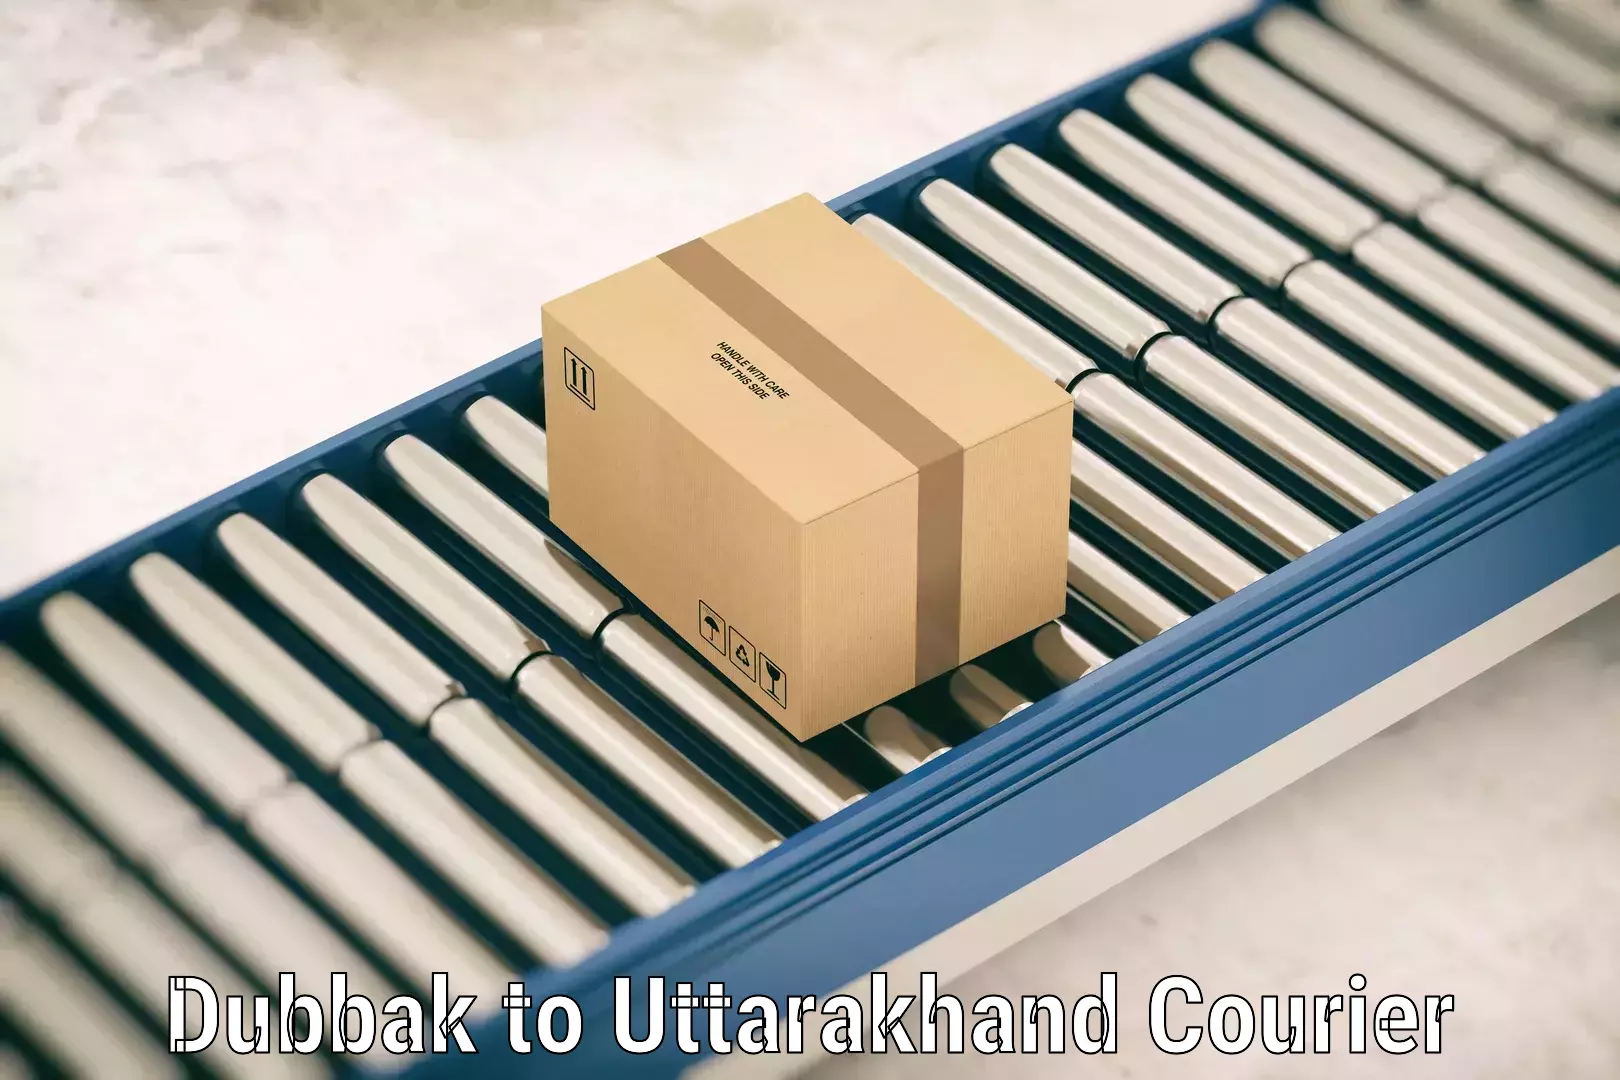 Luggage delivery network Dubbak to Uttarakhand